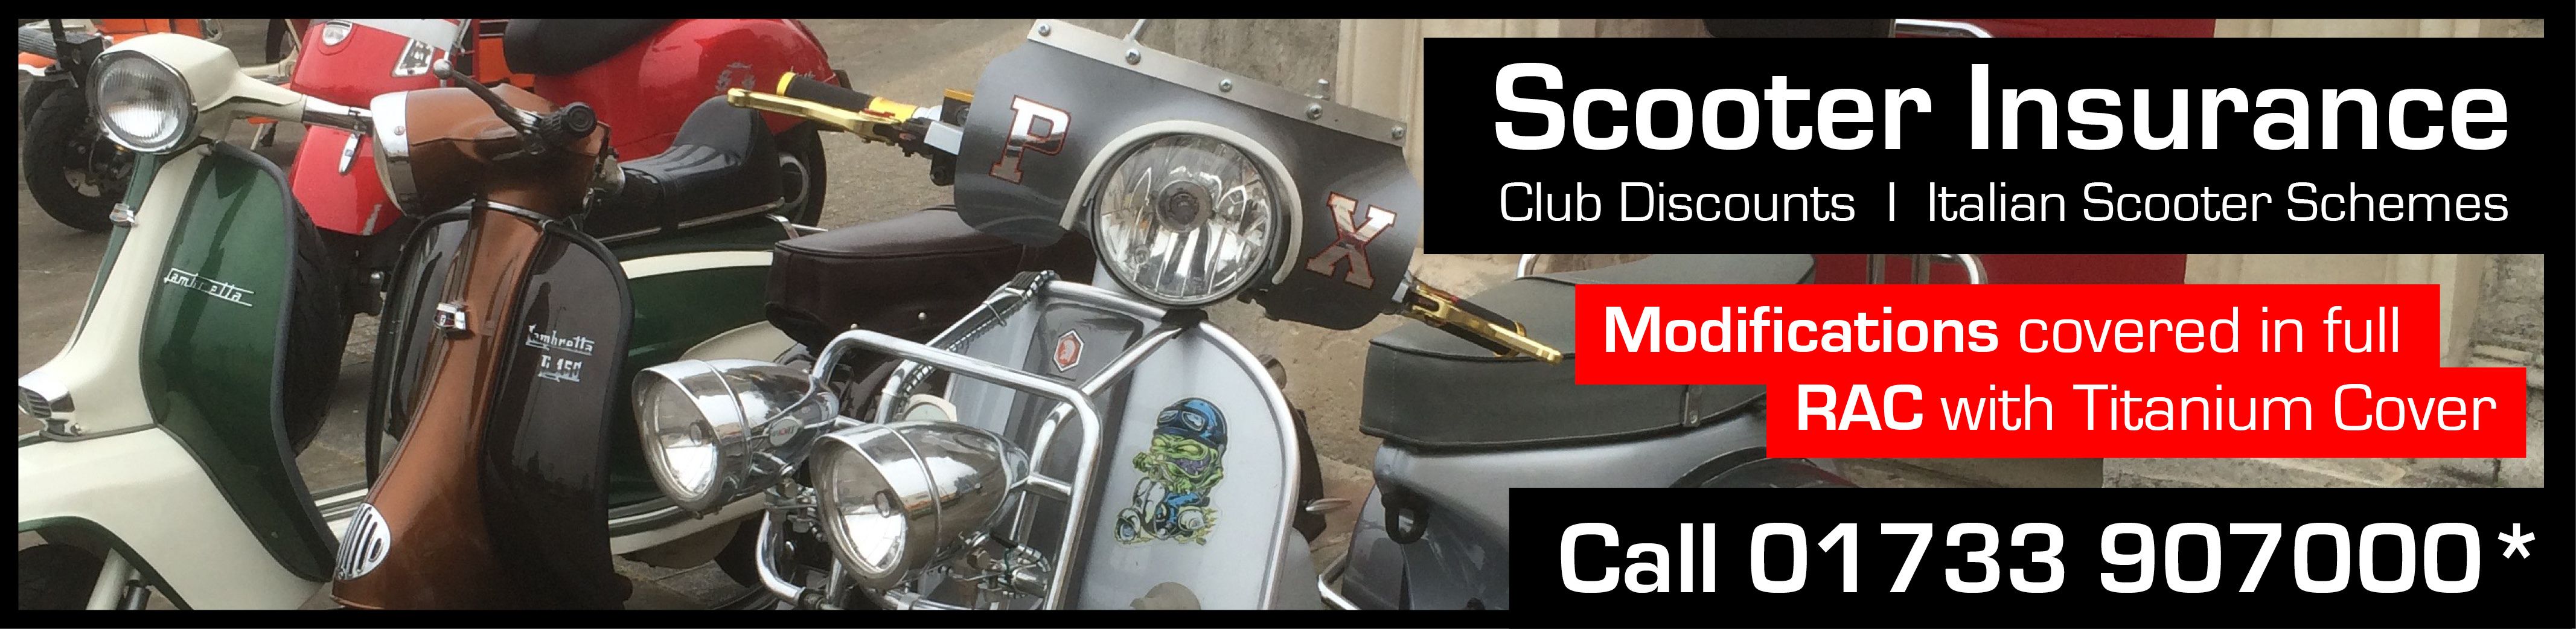 scooter-insurance-banner.jpg